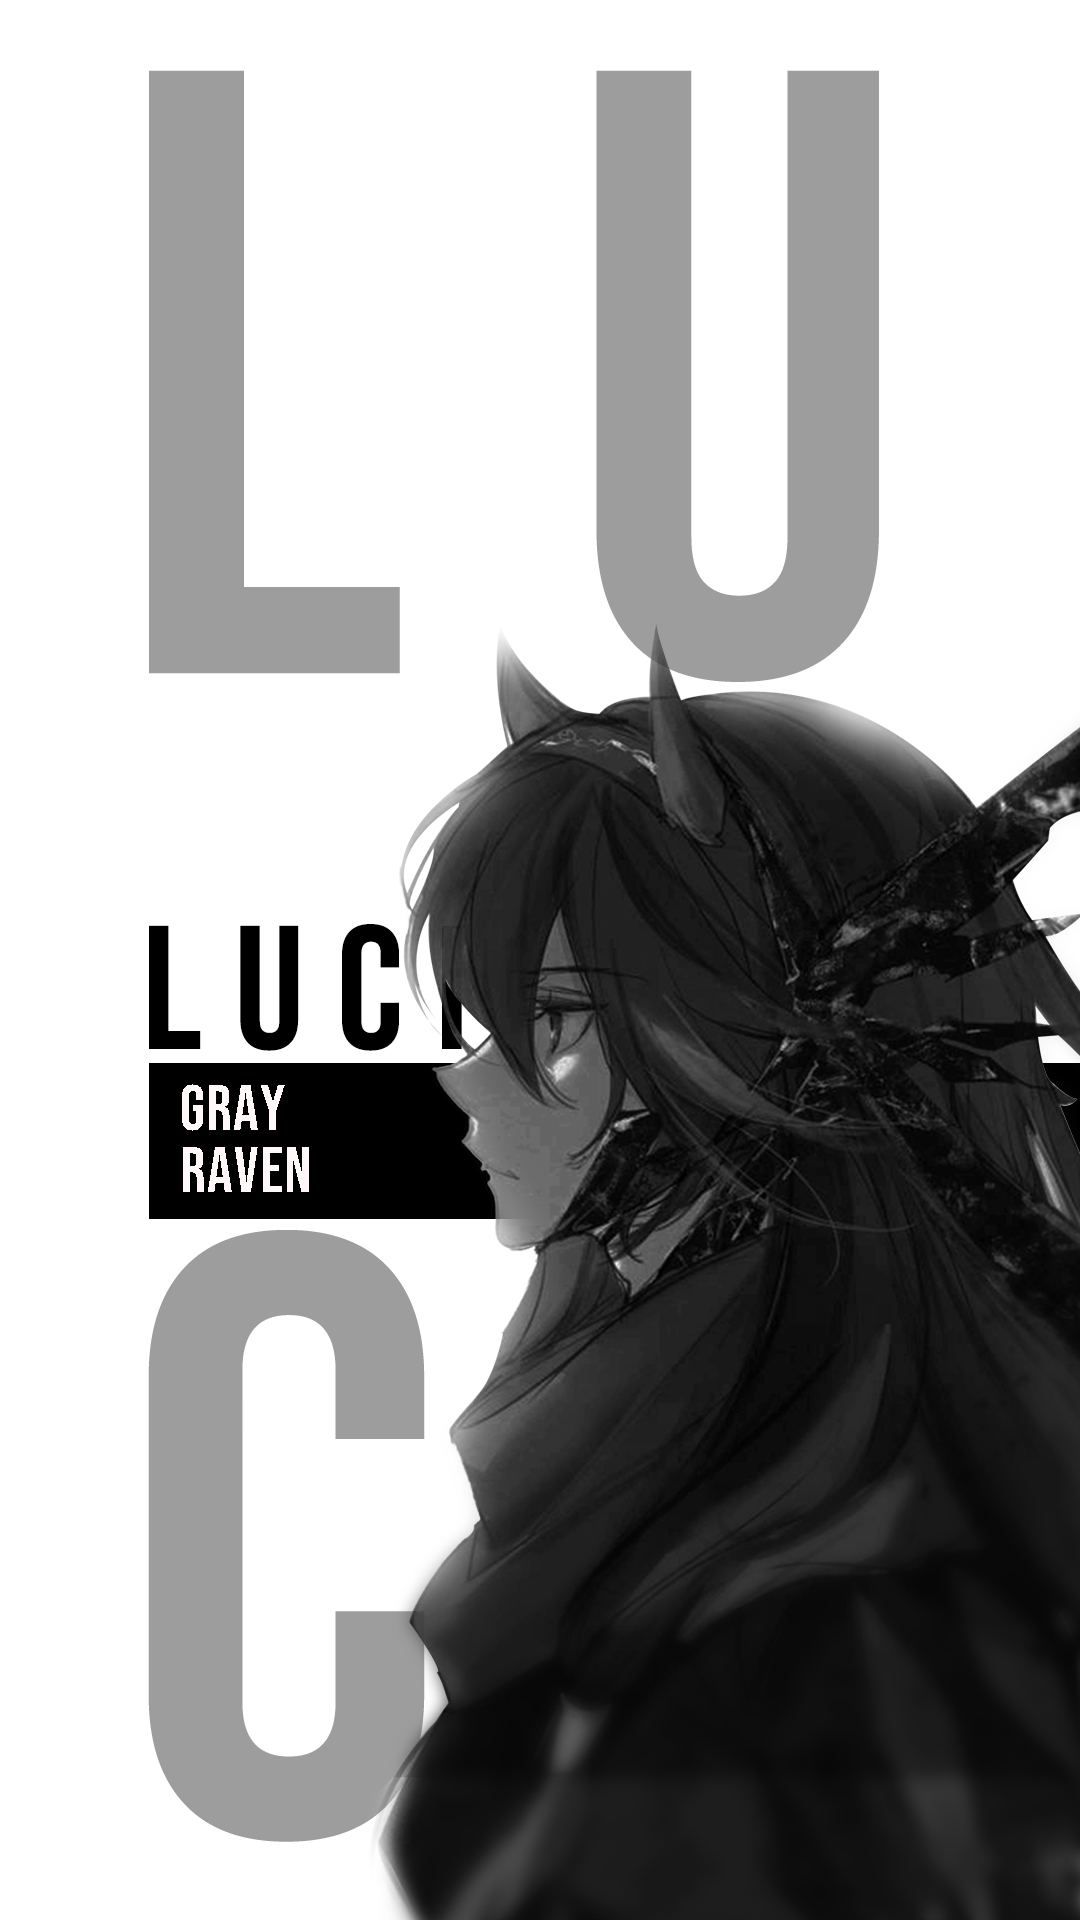 Lucia Punishing Gray Raven Punishing Gray Raven Vertical Anime Girls Looking Away 1080x1920